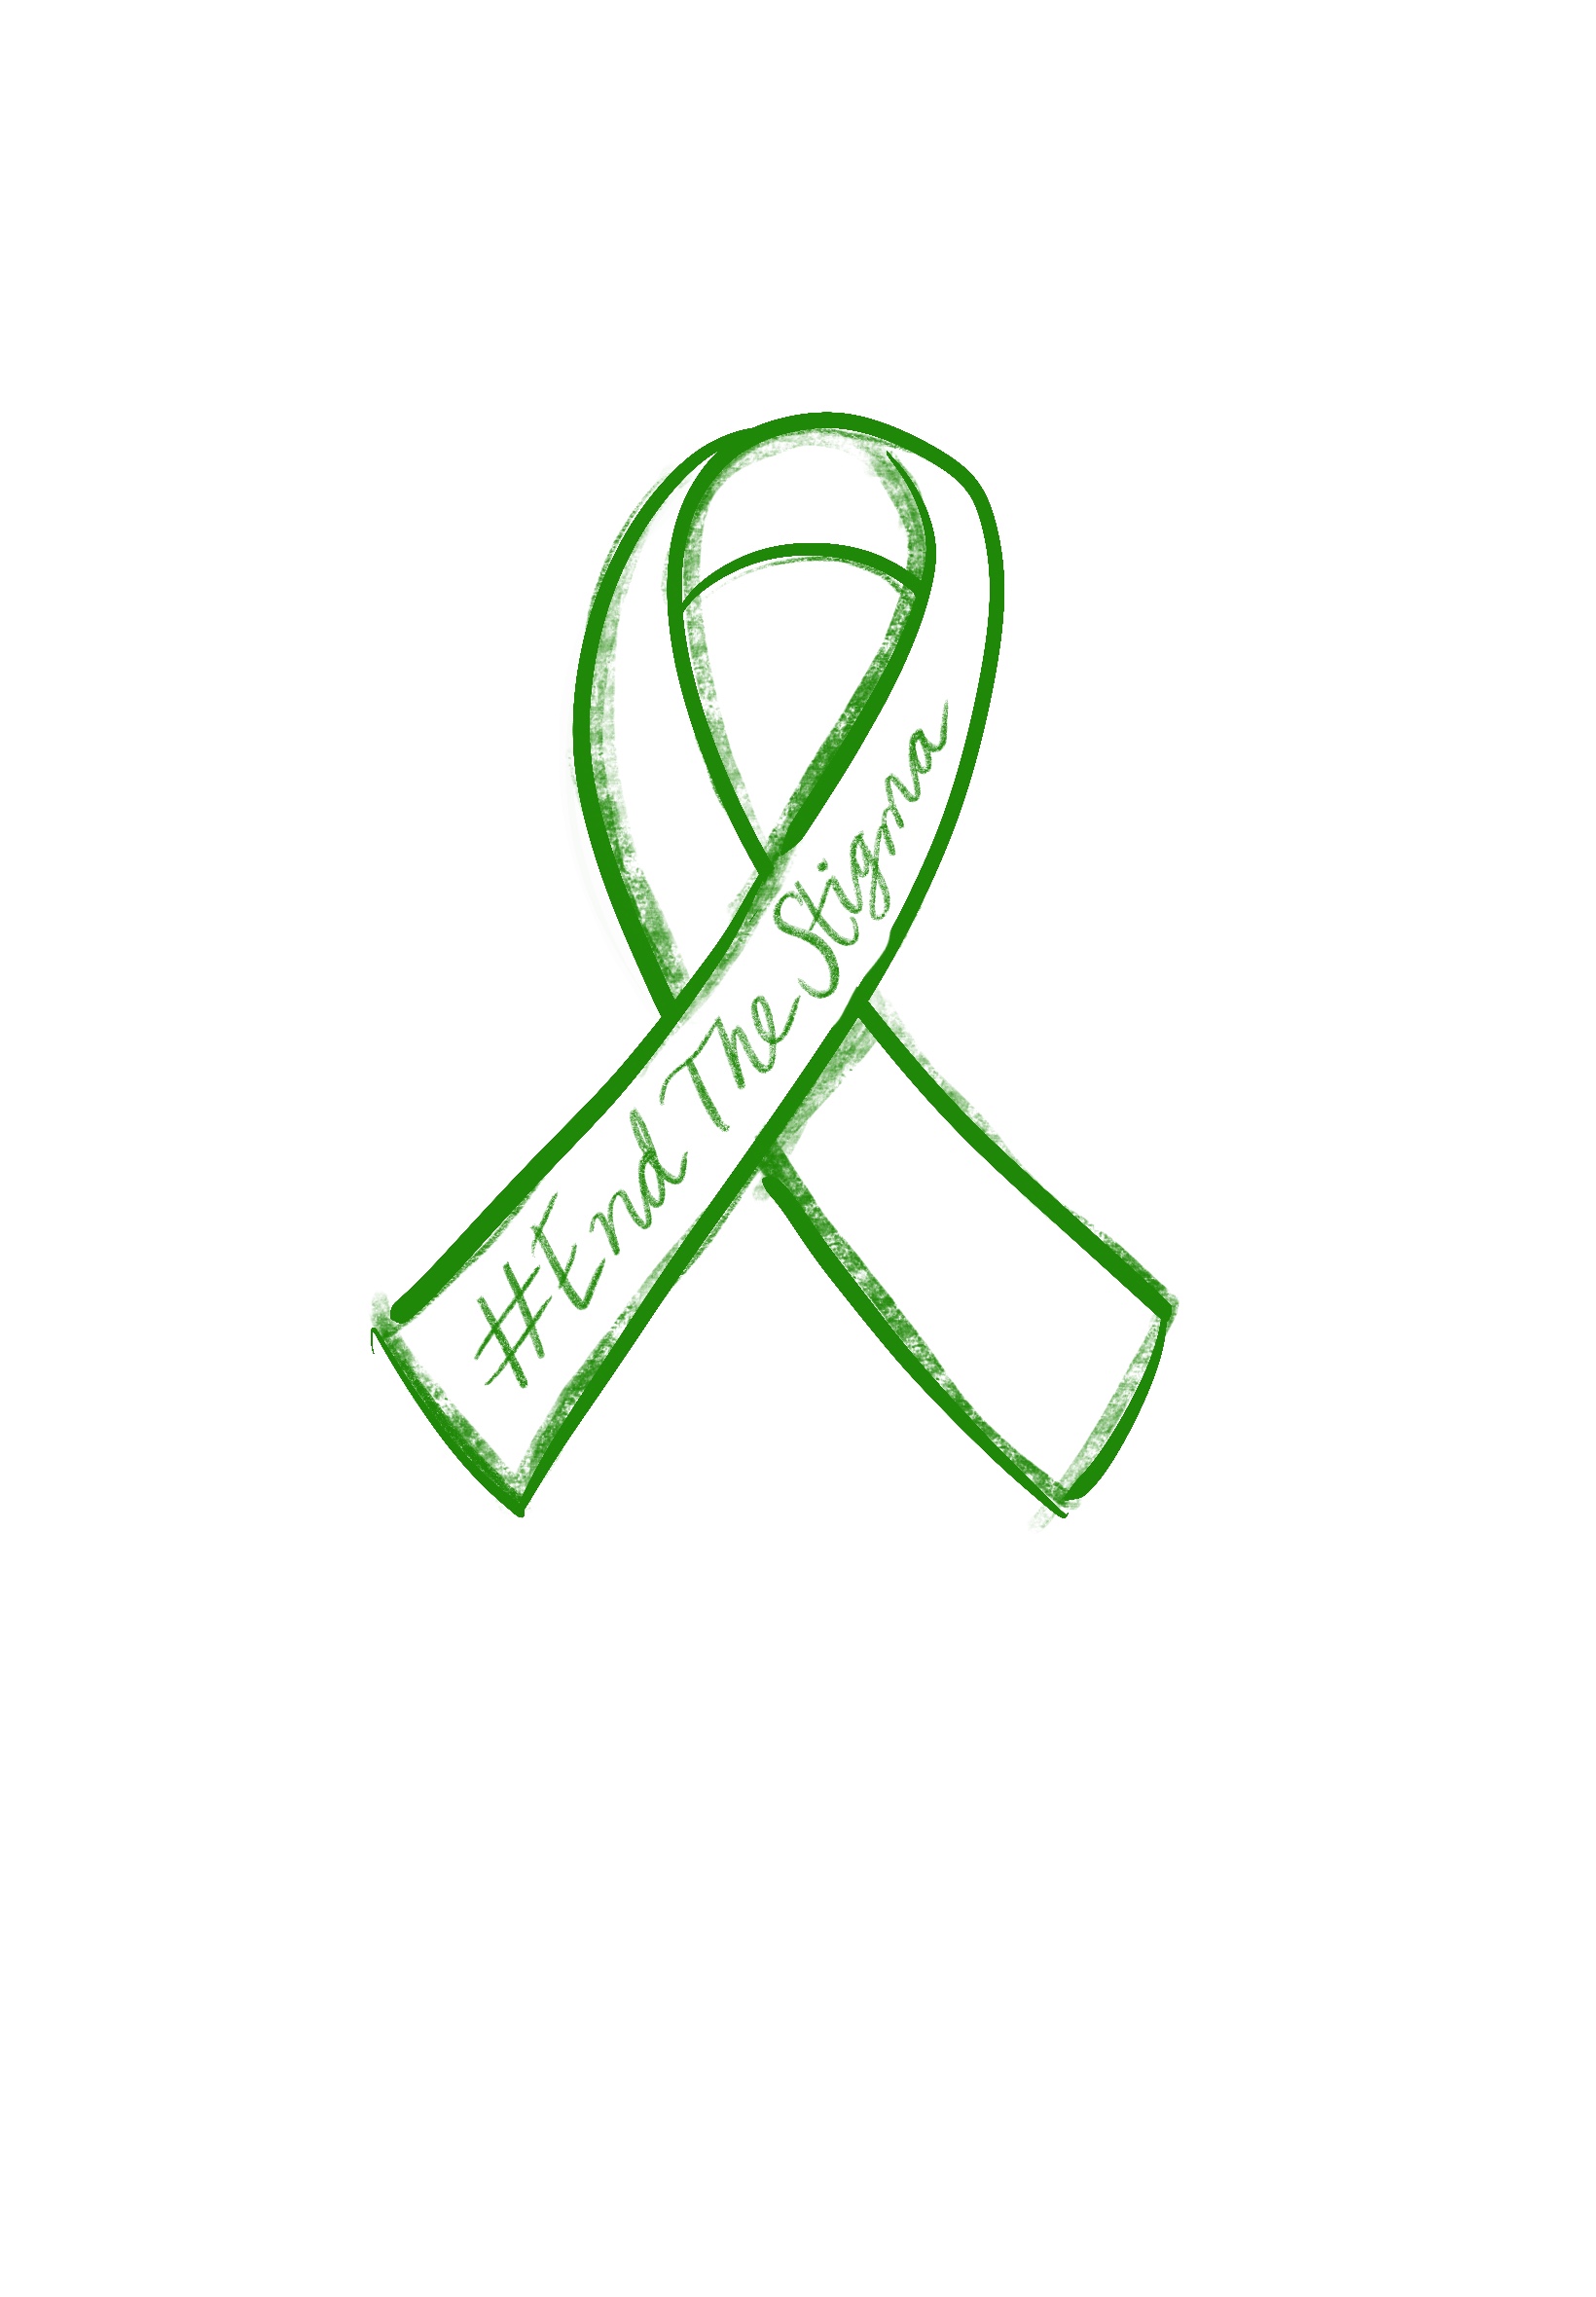 mental health awareness logo